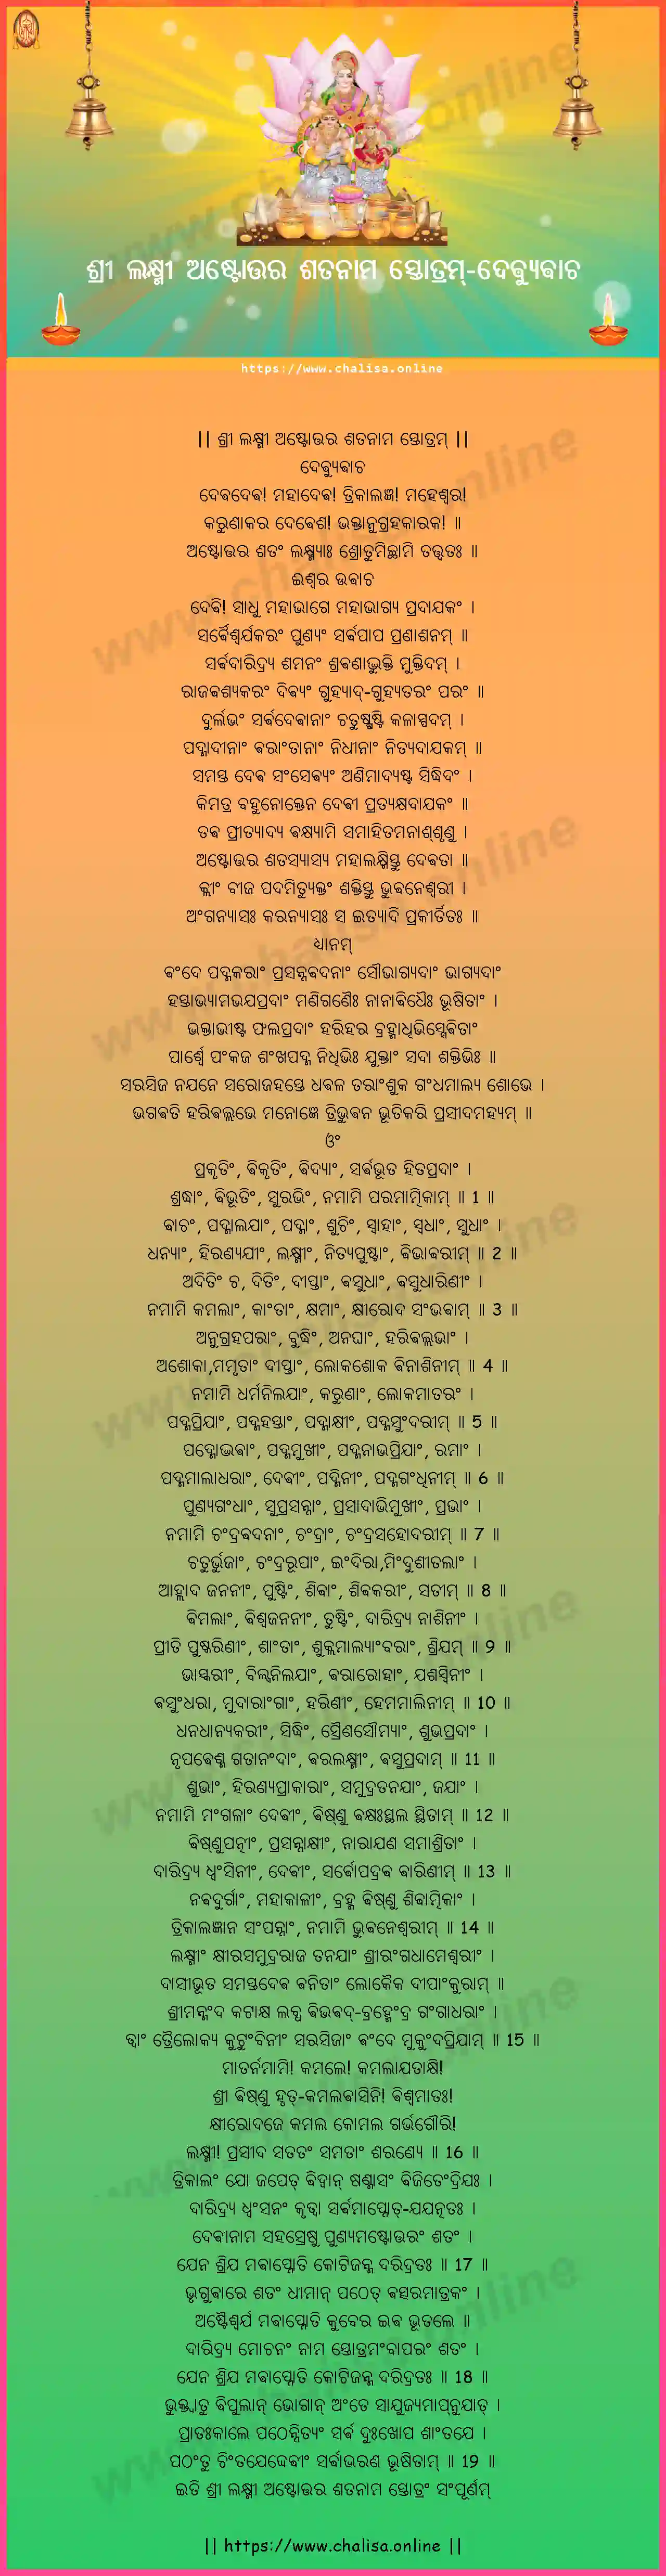 devyuvacha-sree-lakshmi-ashtottara-satanaama-stotram-oriya-oriya-lyrics-download